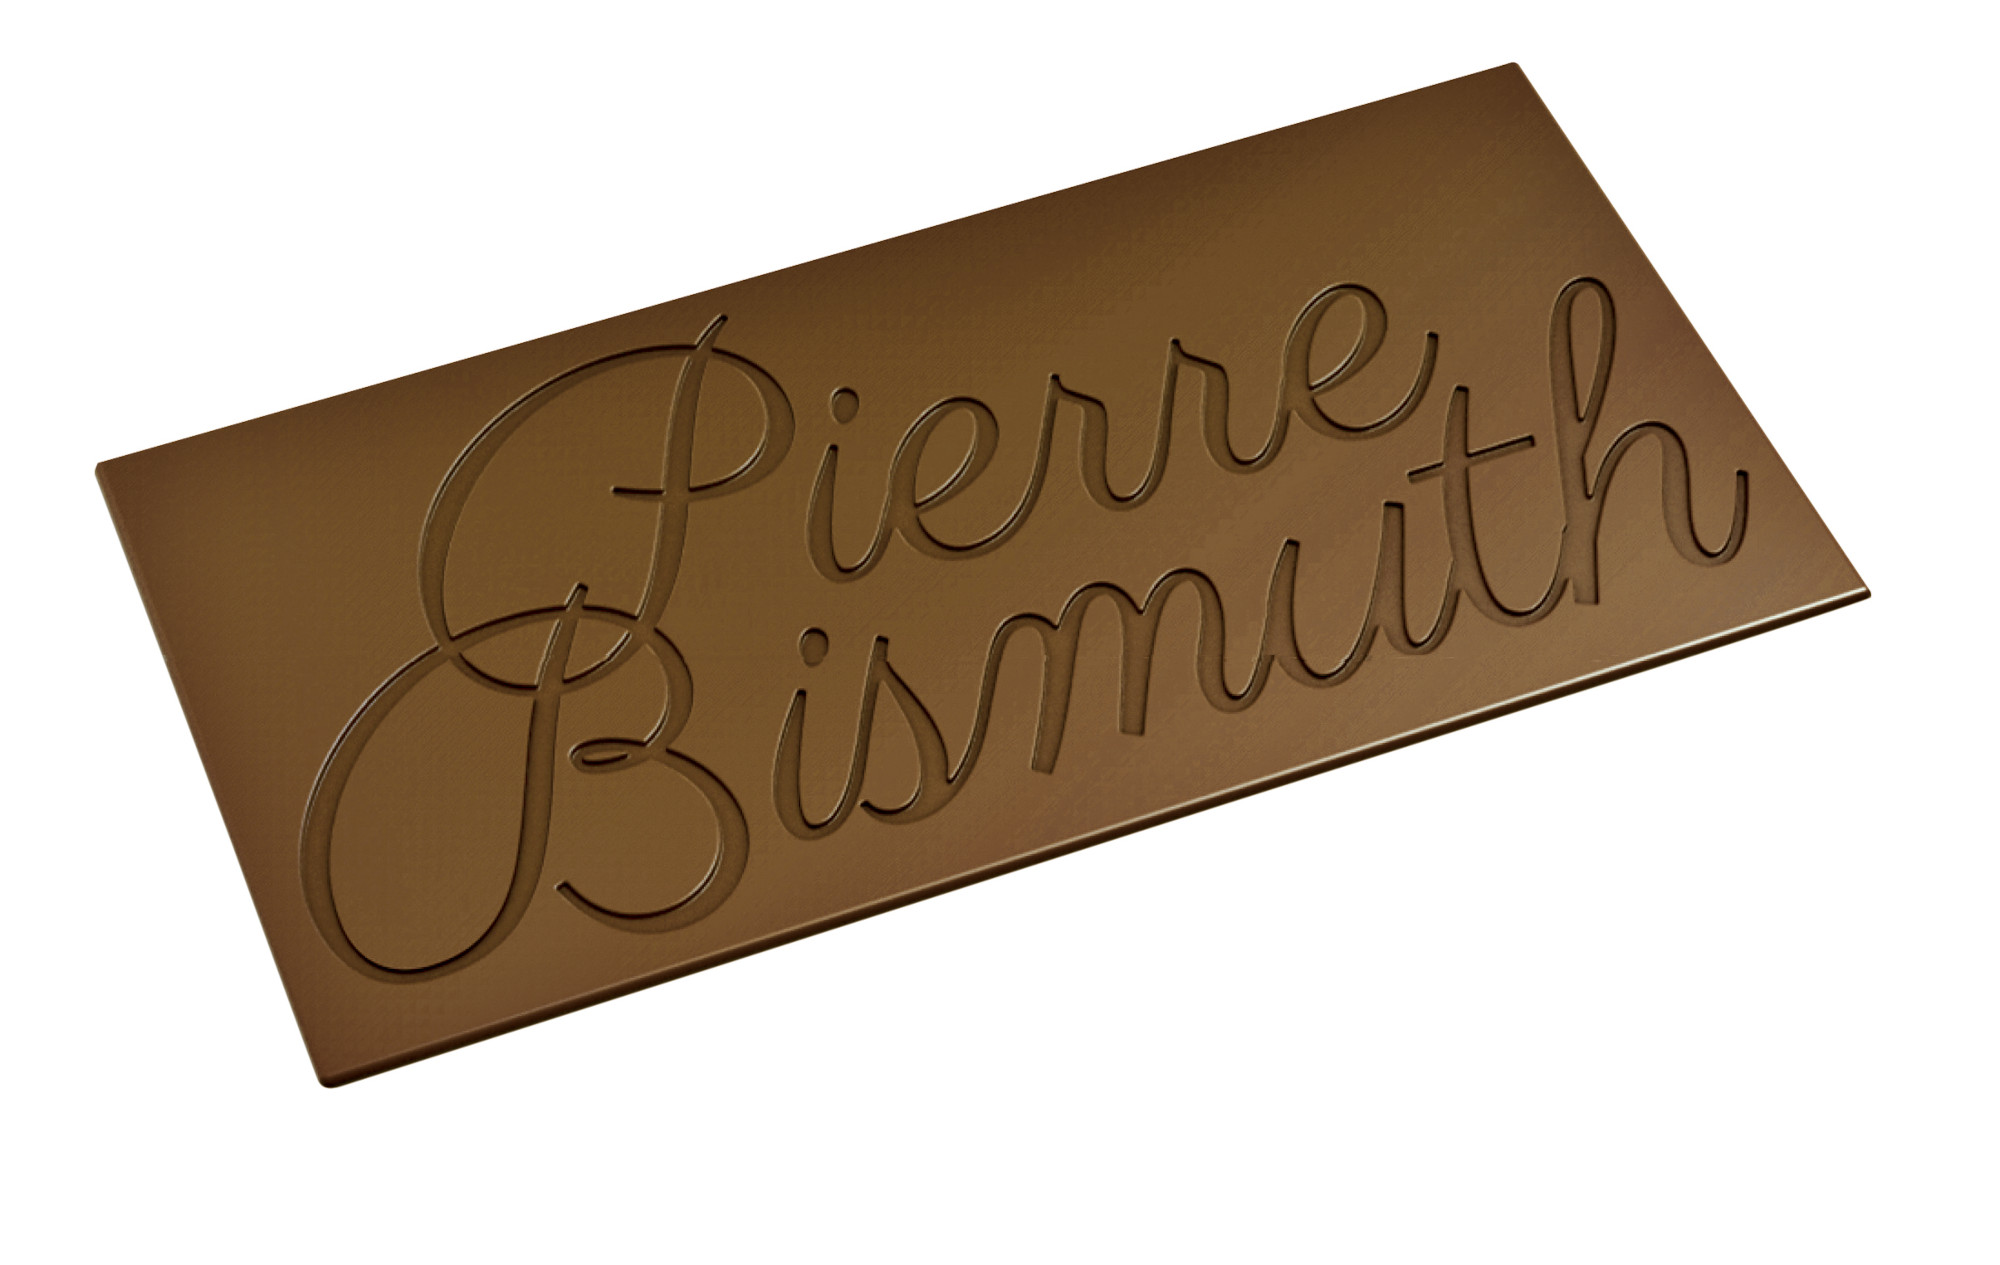 Pierre Bismuth's Milk Chocolate Bar